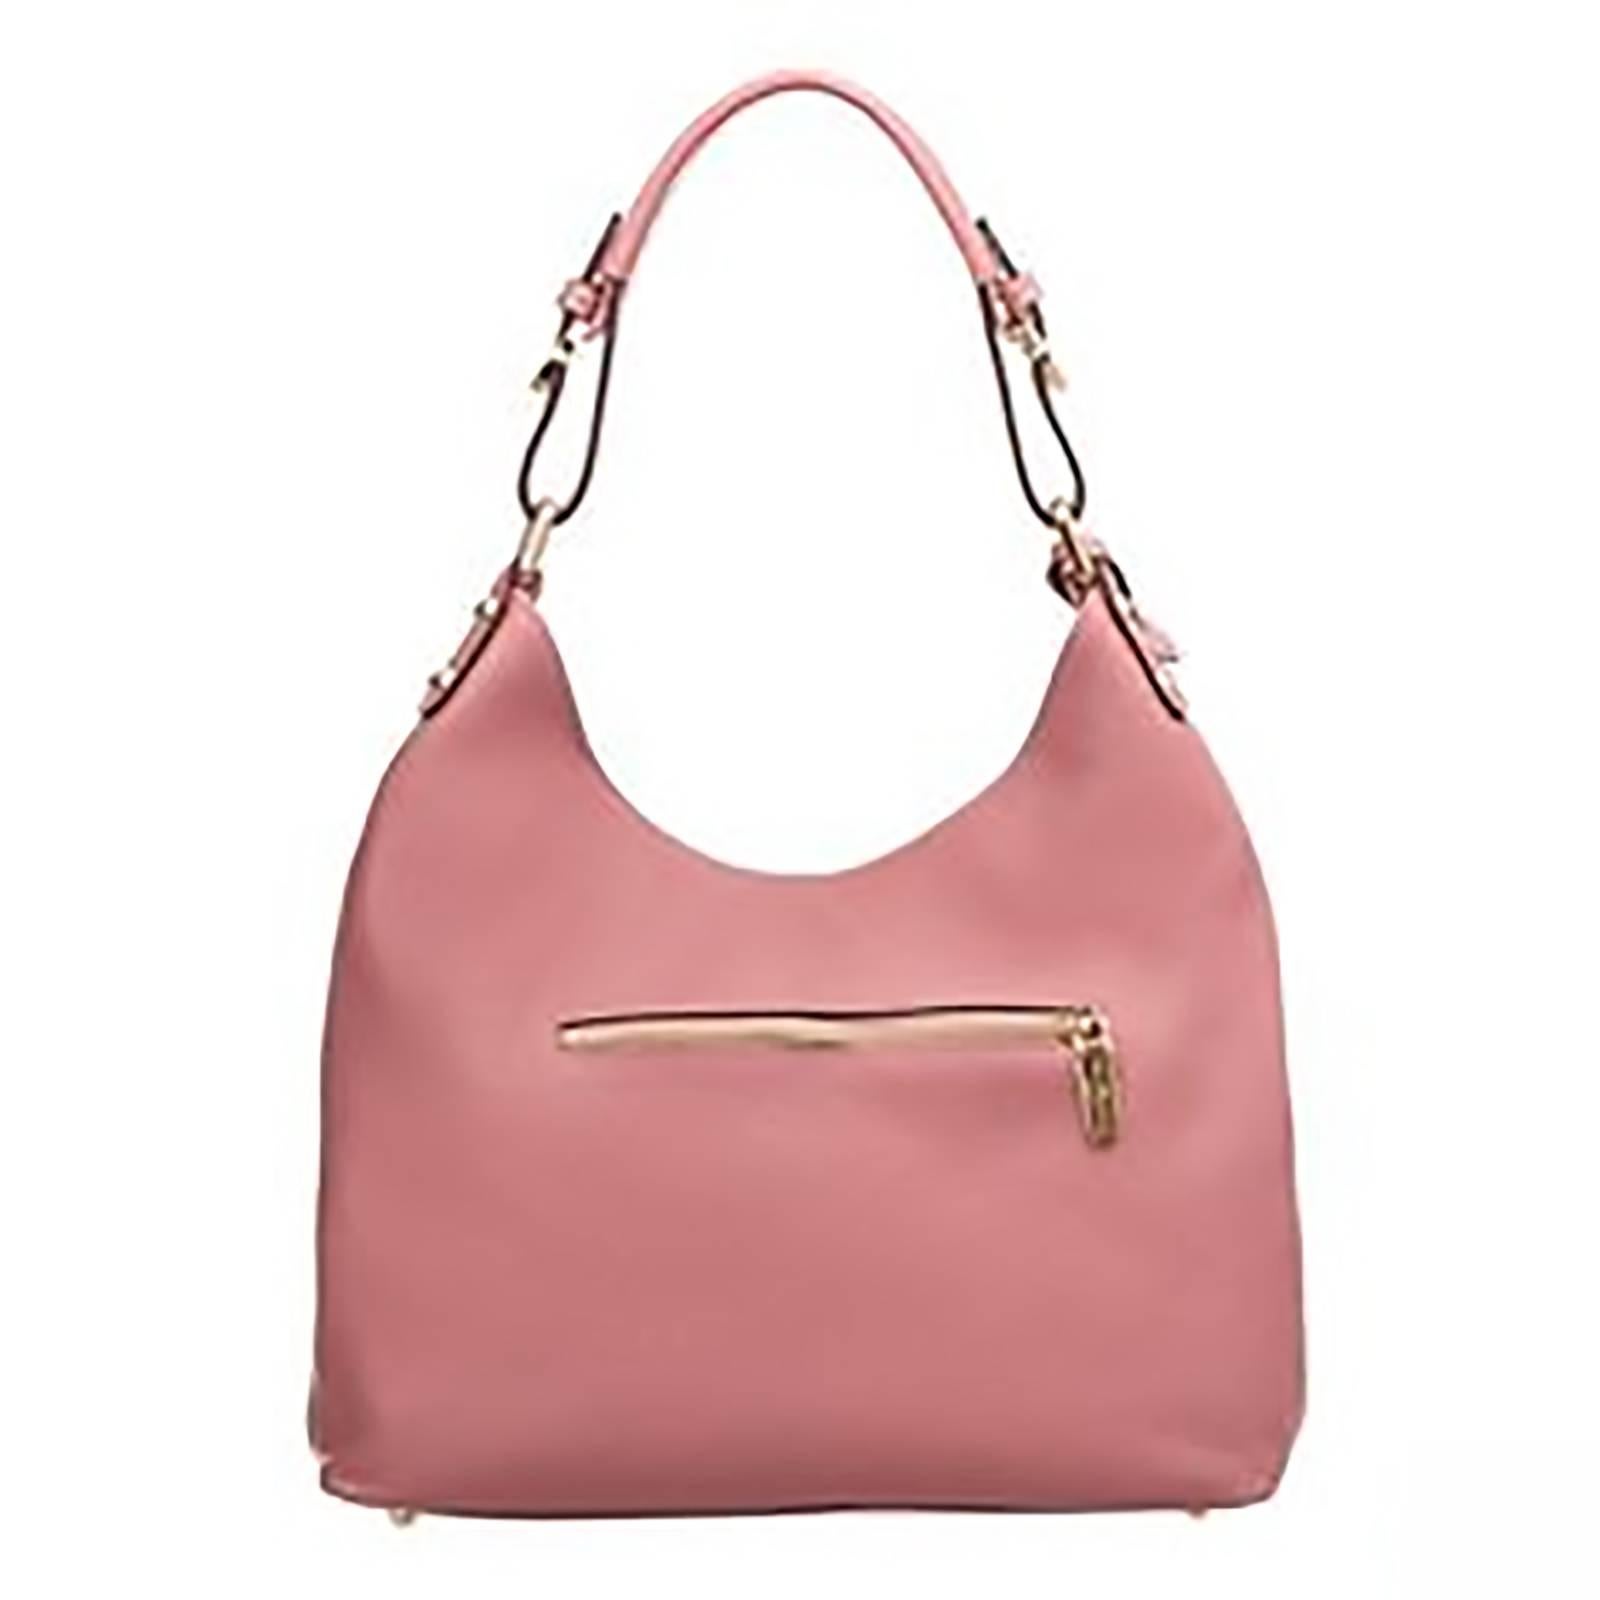 pink hobo bag